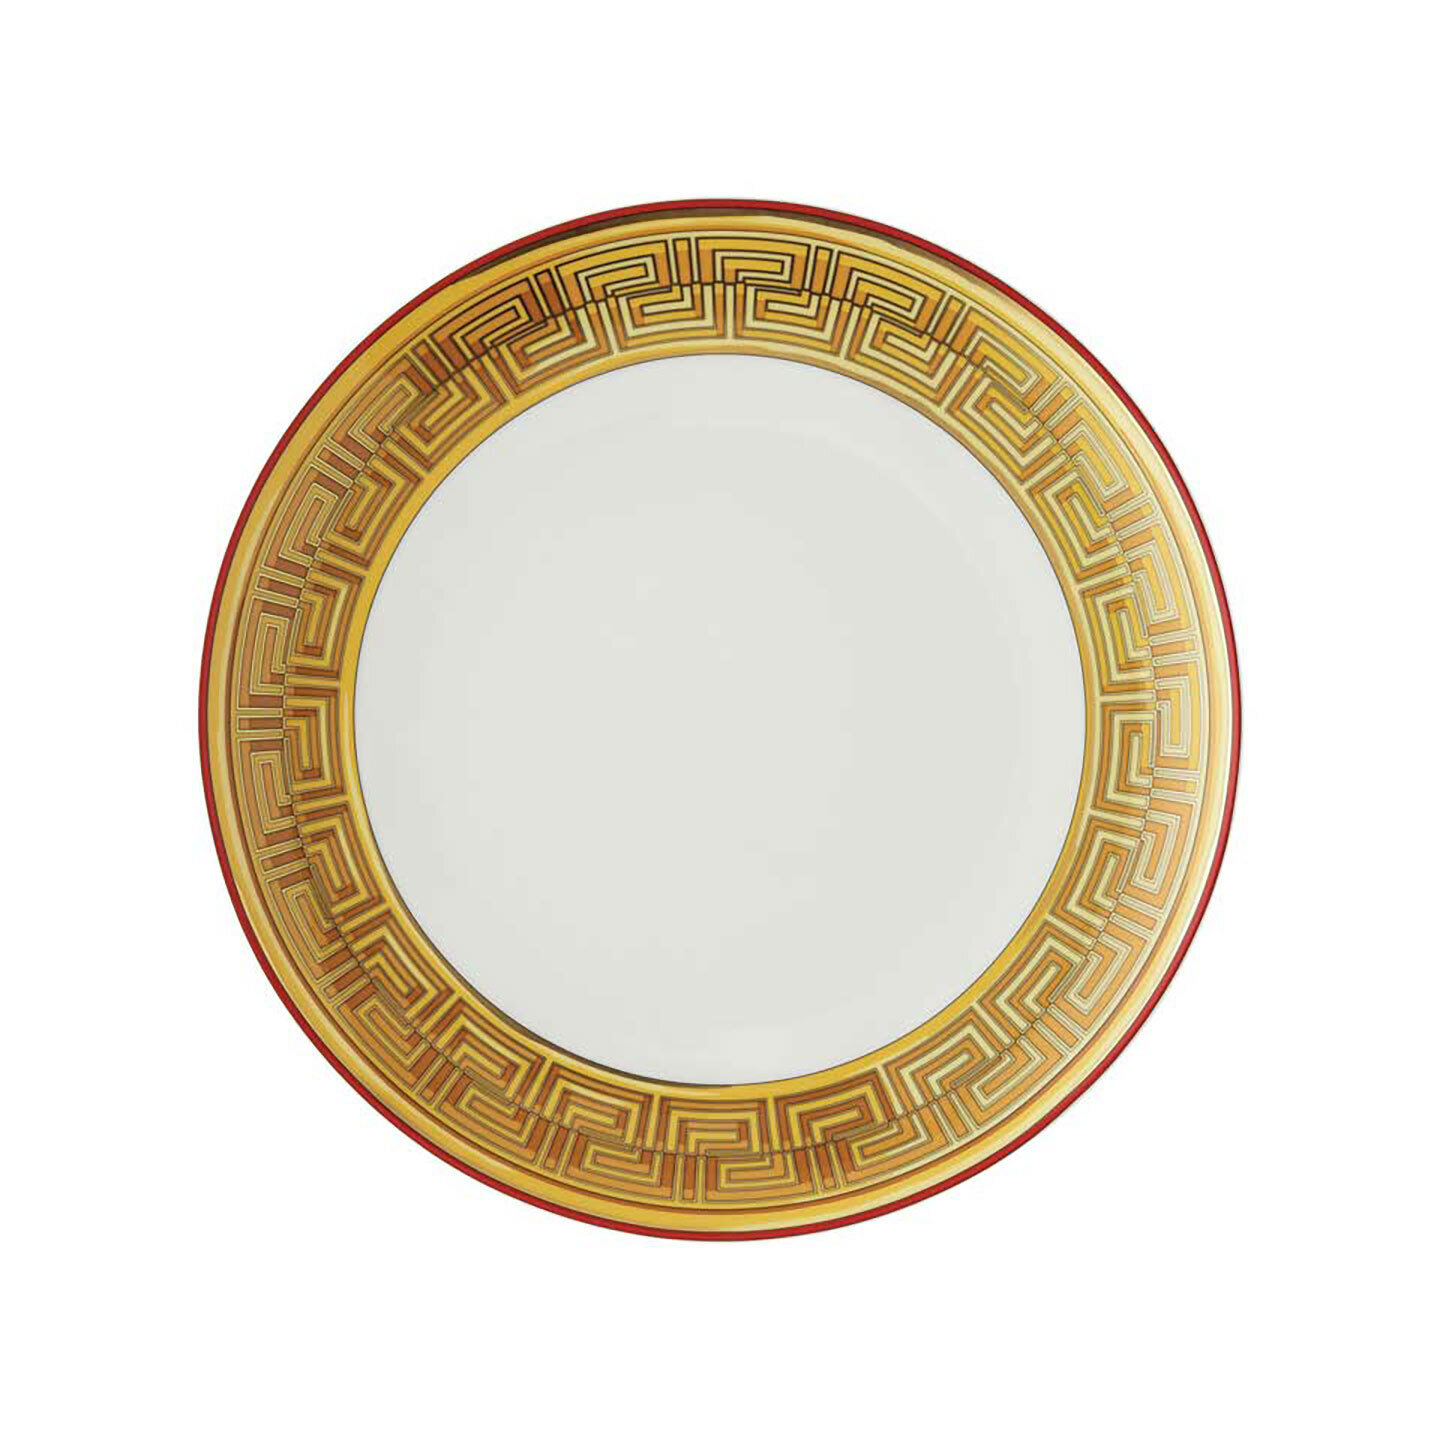 Versace Medusa Amplified Golden Coin Dinner Plate 11 Inch